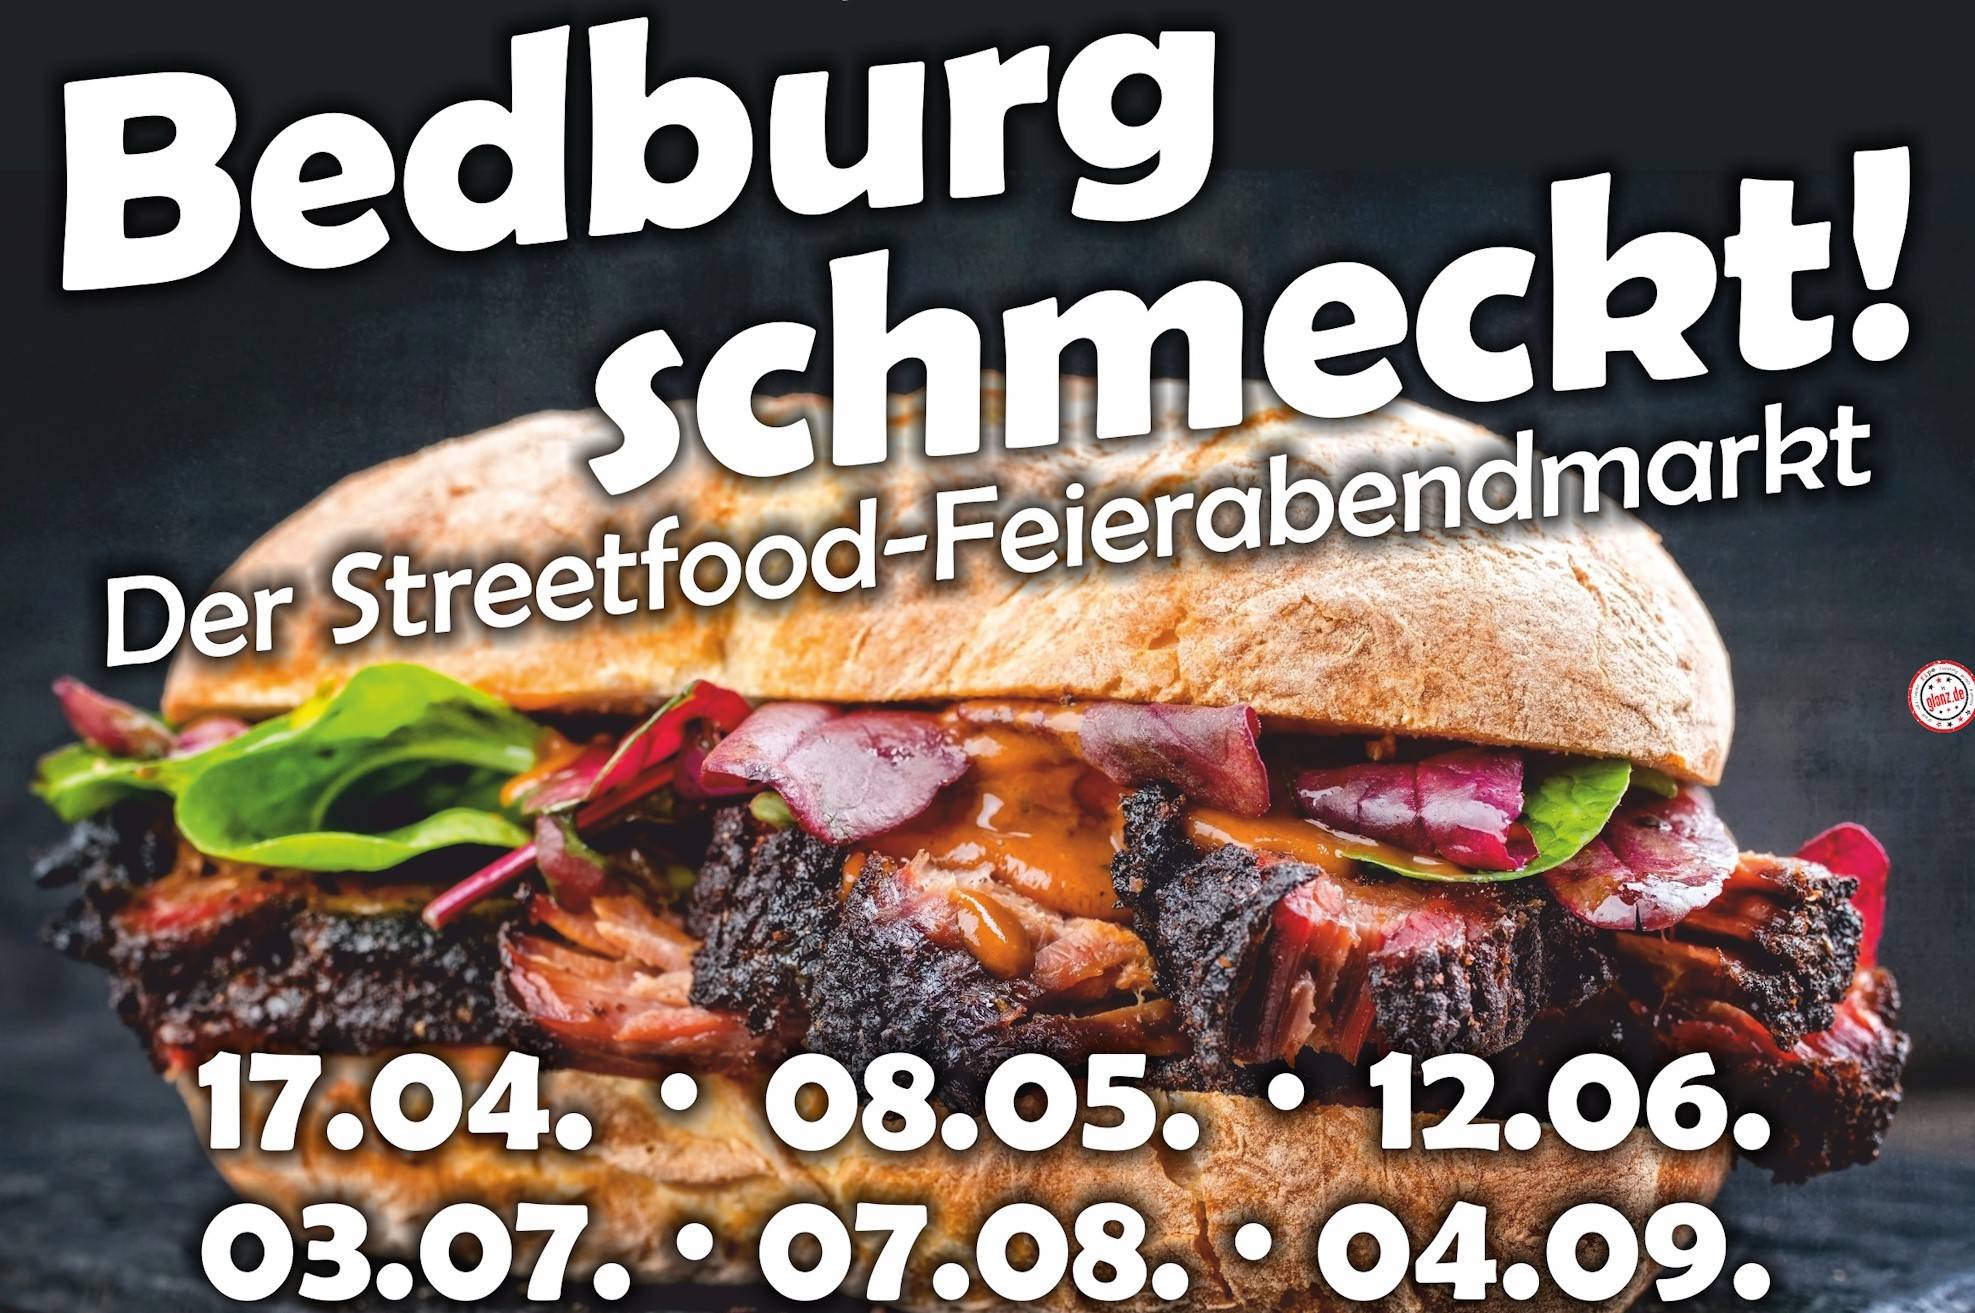 „Bedburger Streetfood-Feierabendmarkt“